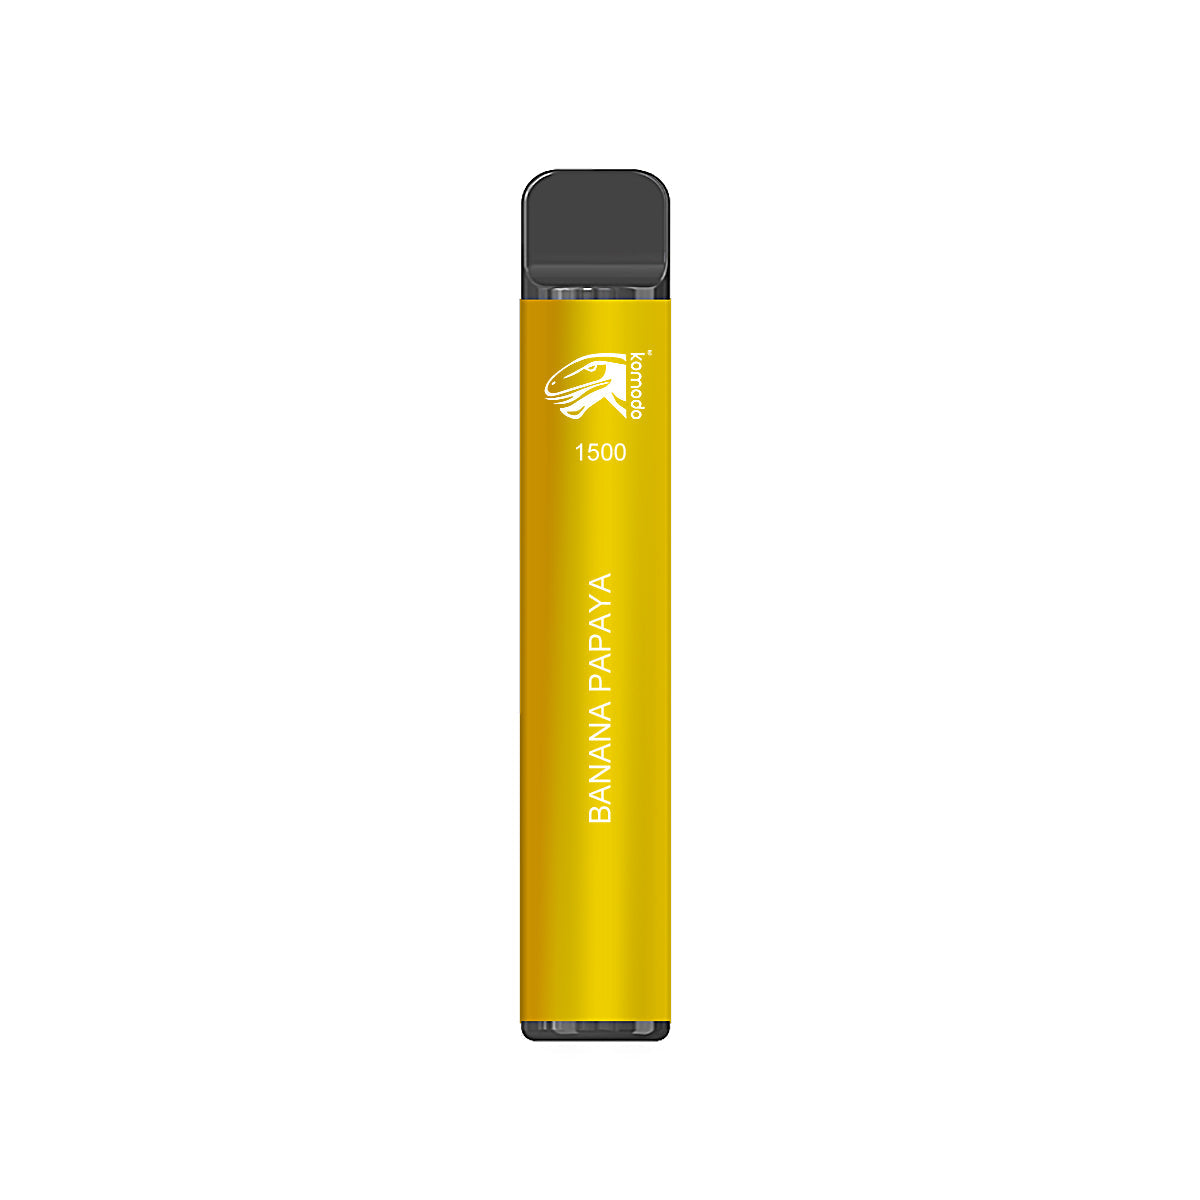 Komodo 1500 Puffs Disposable Vape Prefilled Electronic Cigarette (10pcs)